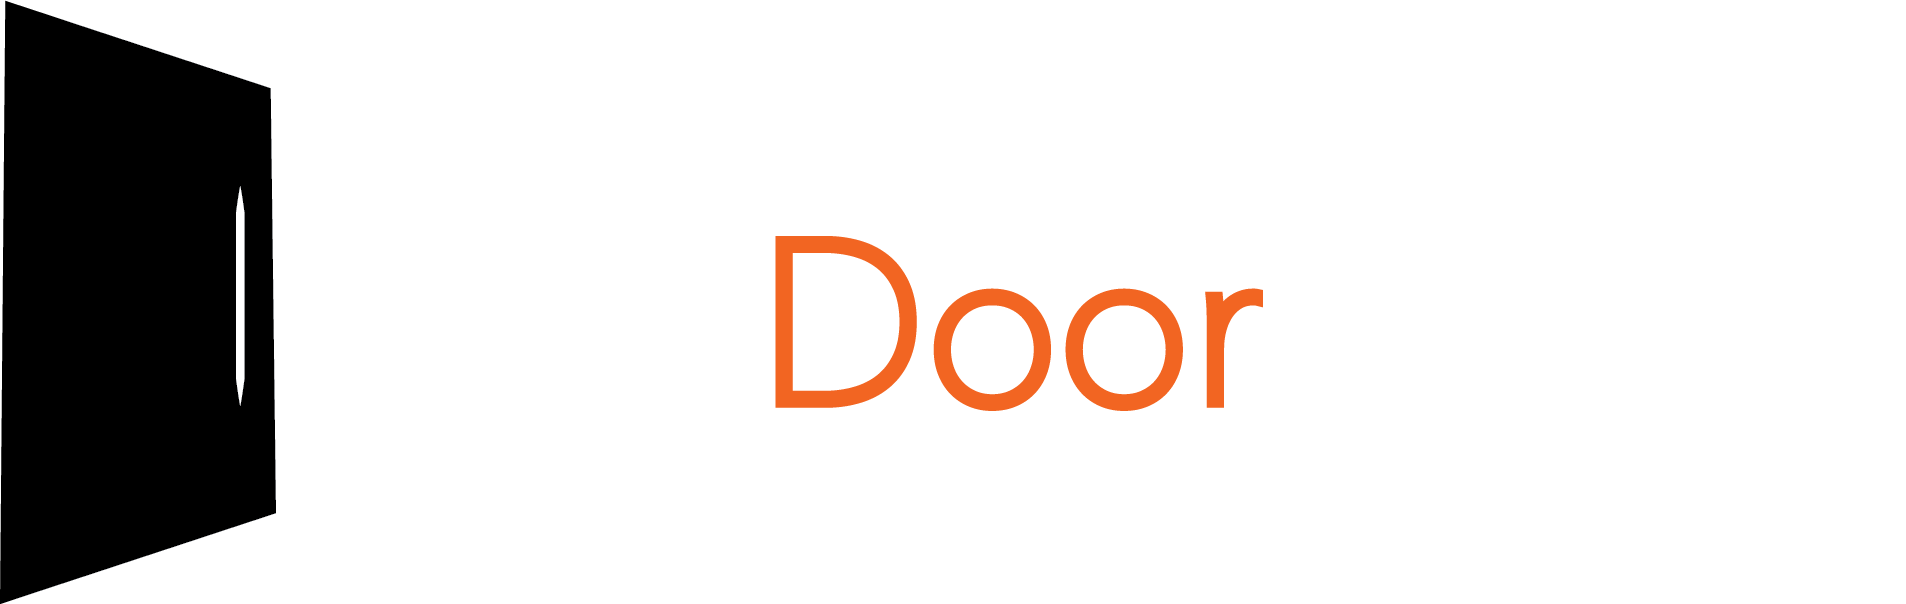 THE DOOR CENTRE